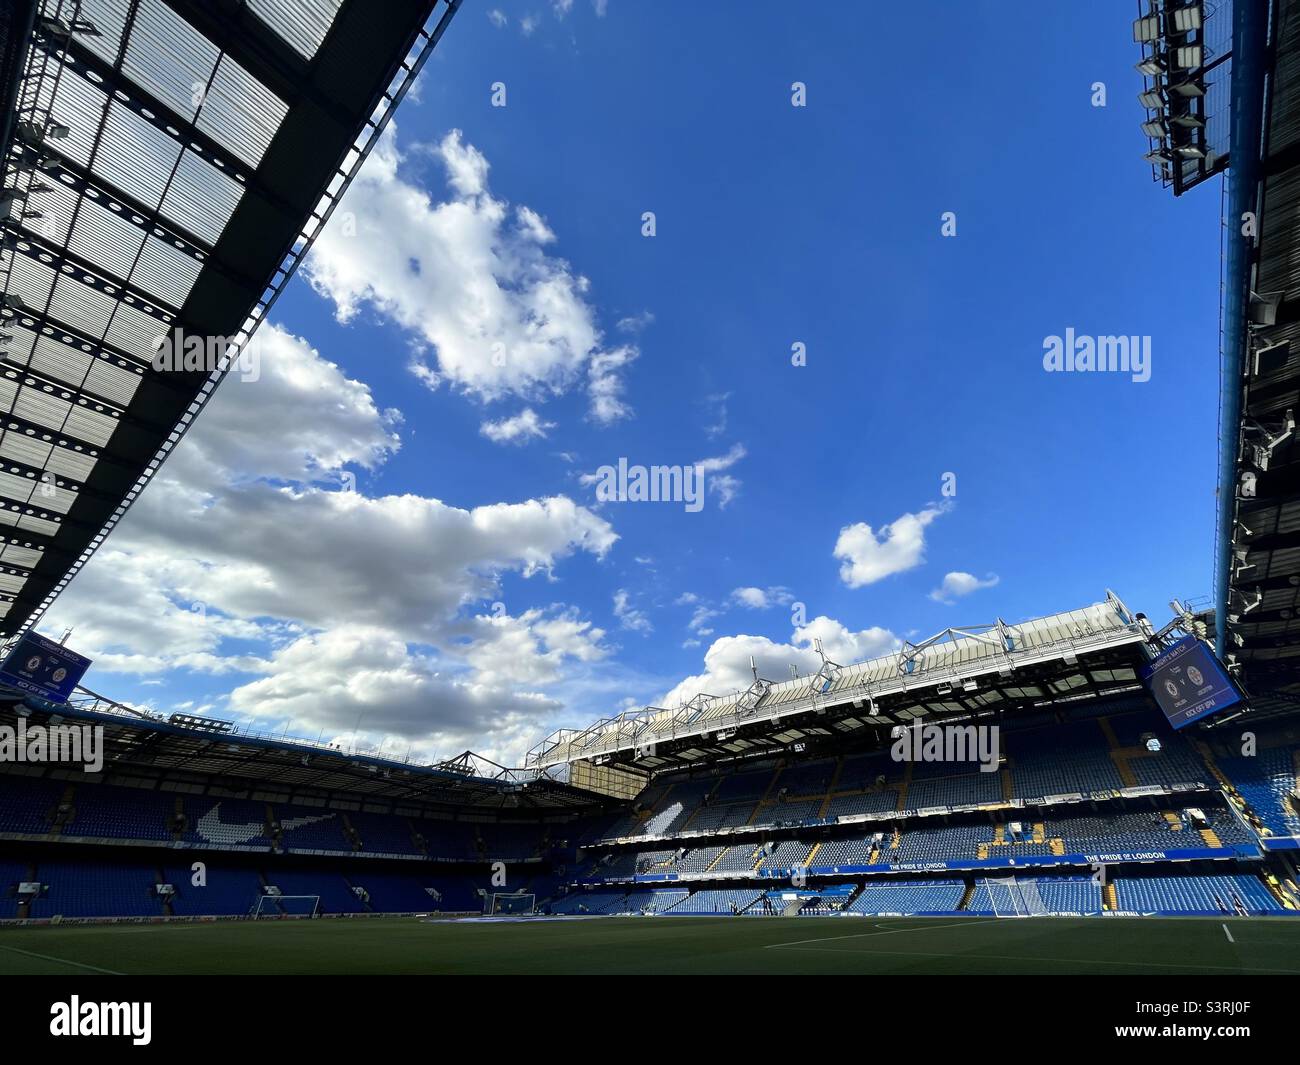 Vue générale du stade de football Stamford Bridge, stade du Chelsea FC à Londres. Chelsea joue dans la Premier League anglaise. Banque D'Images